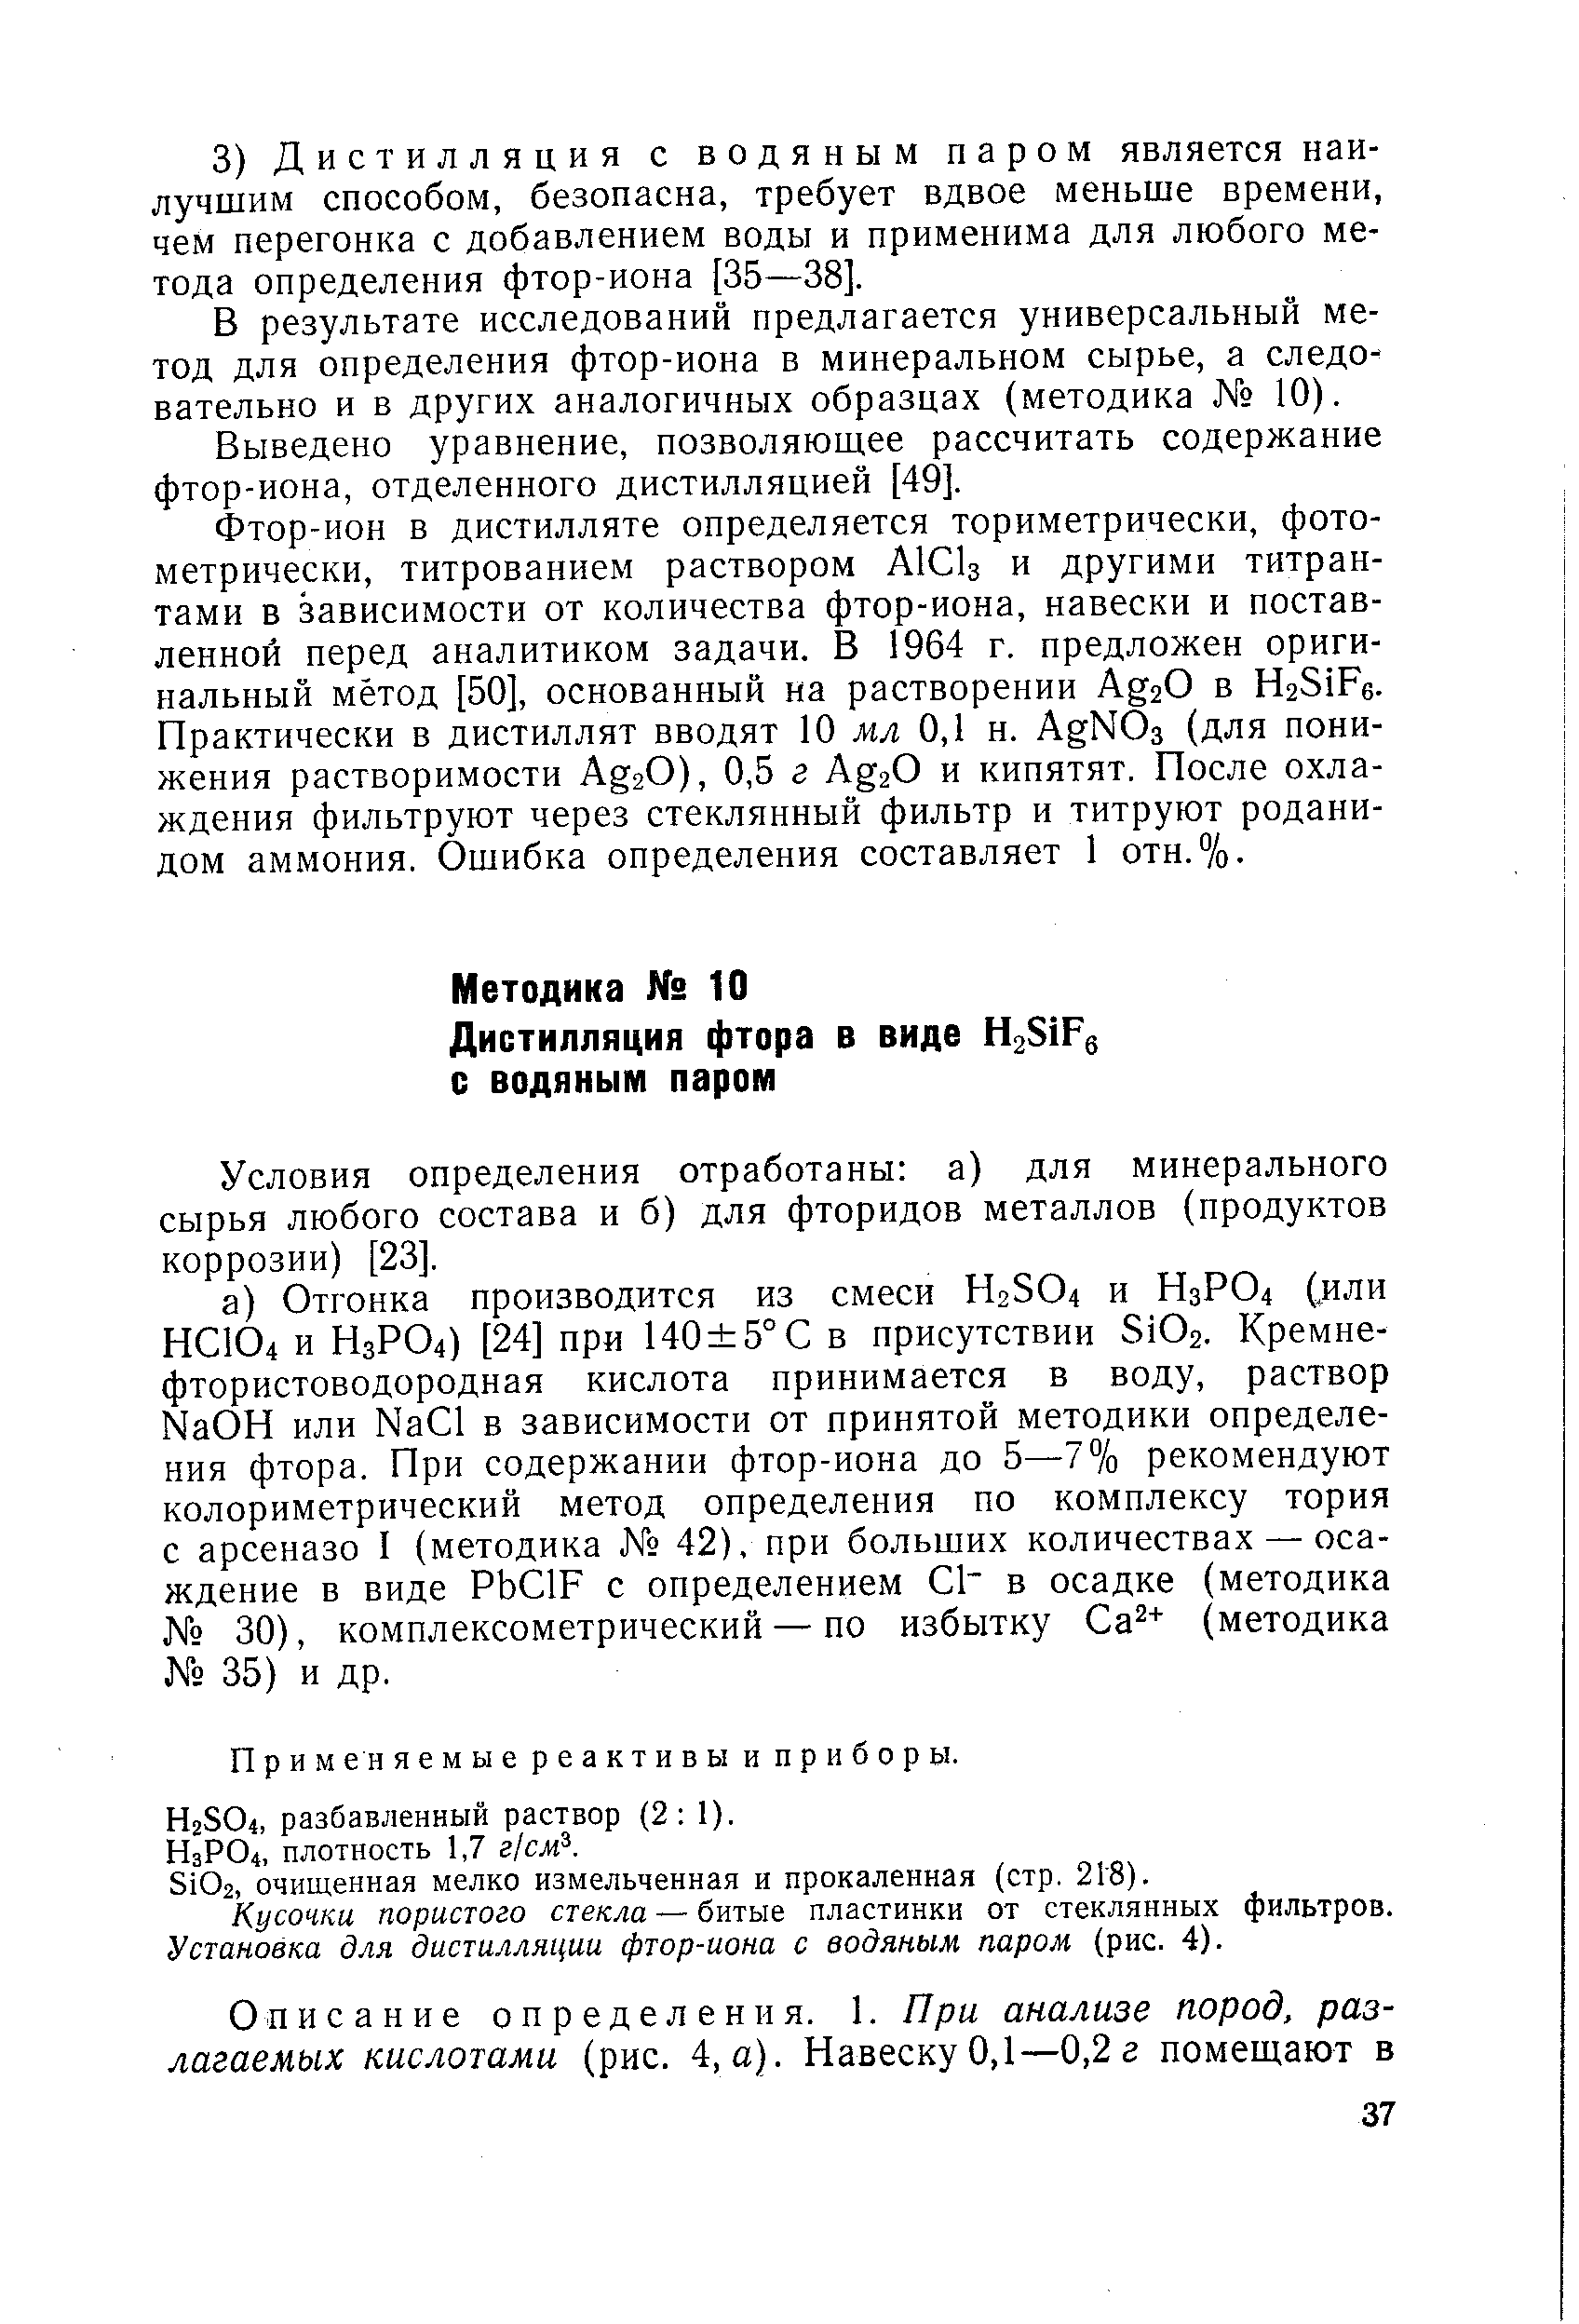 Условия определения отработаны а) для минерального сырья любого состава и б) для фторидов металлов (продуктов коррозии) [23].